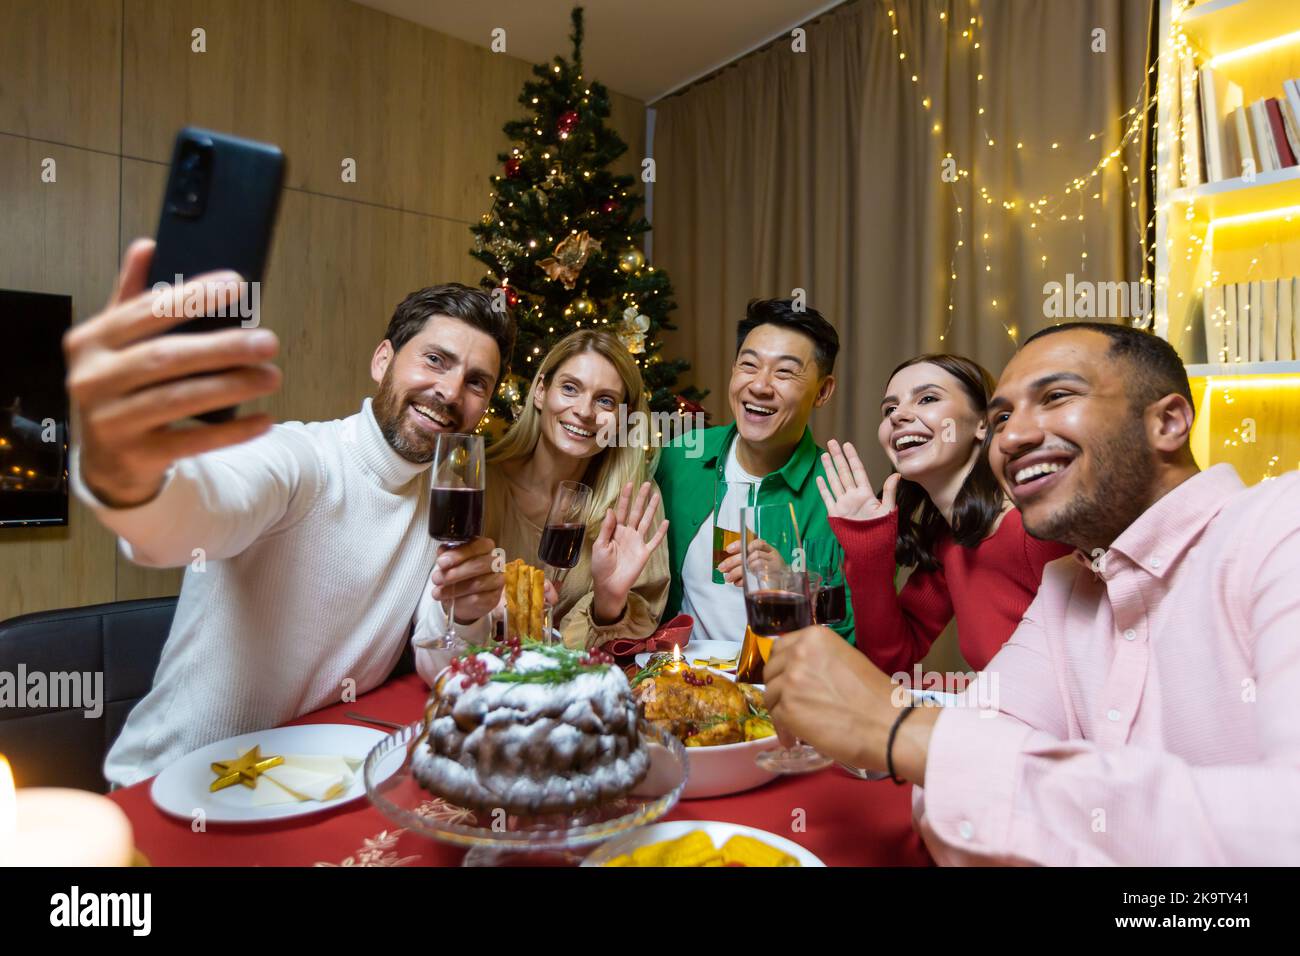 Divers amis célébrant Noël et le nouvel an dans la soirée, assis à la table, boire du vin et manger, prendre un selfie ensemble au téléphone près de l'arbre de Noël. Banque D'Images